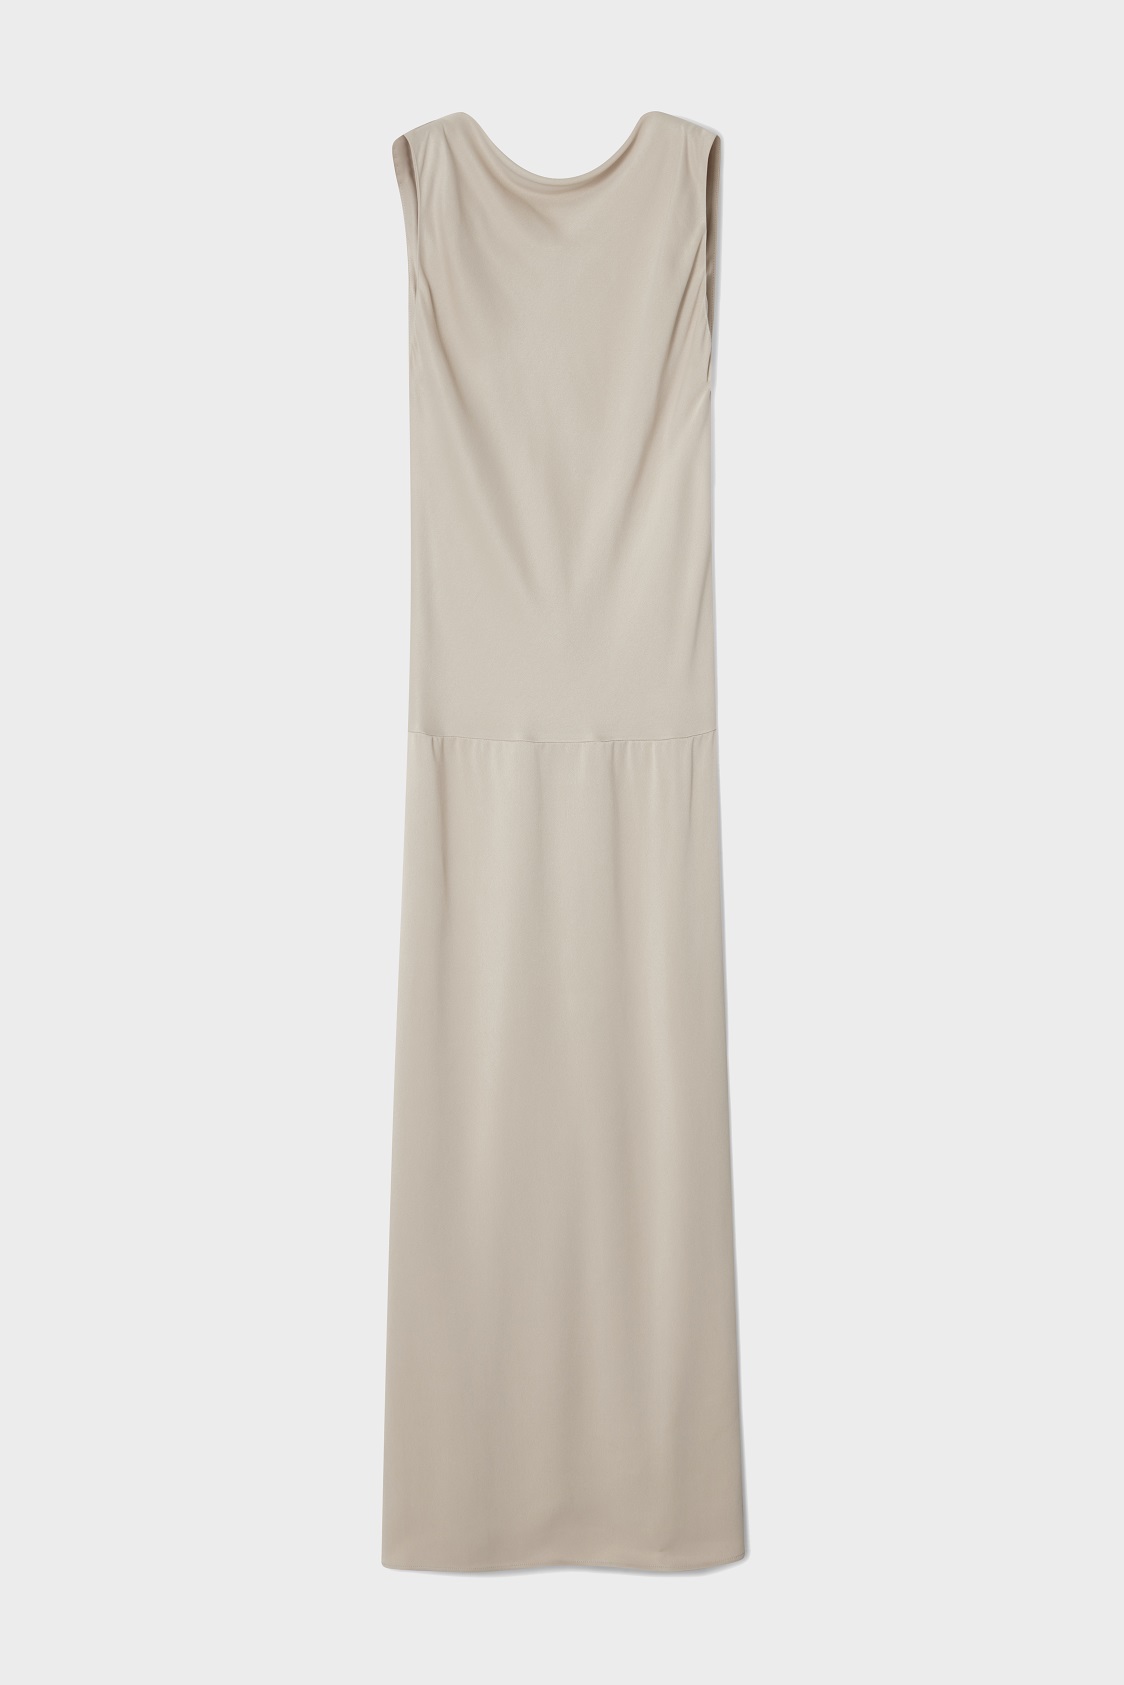 DAGMAR Bias Cut Dress in Pearl Grey 38